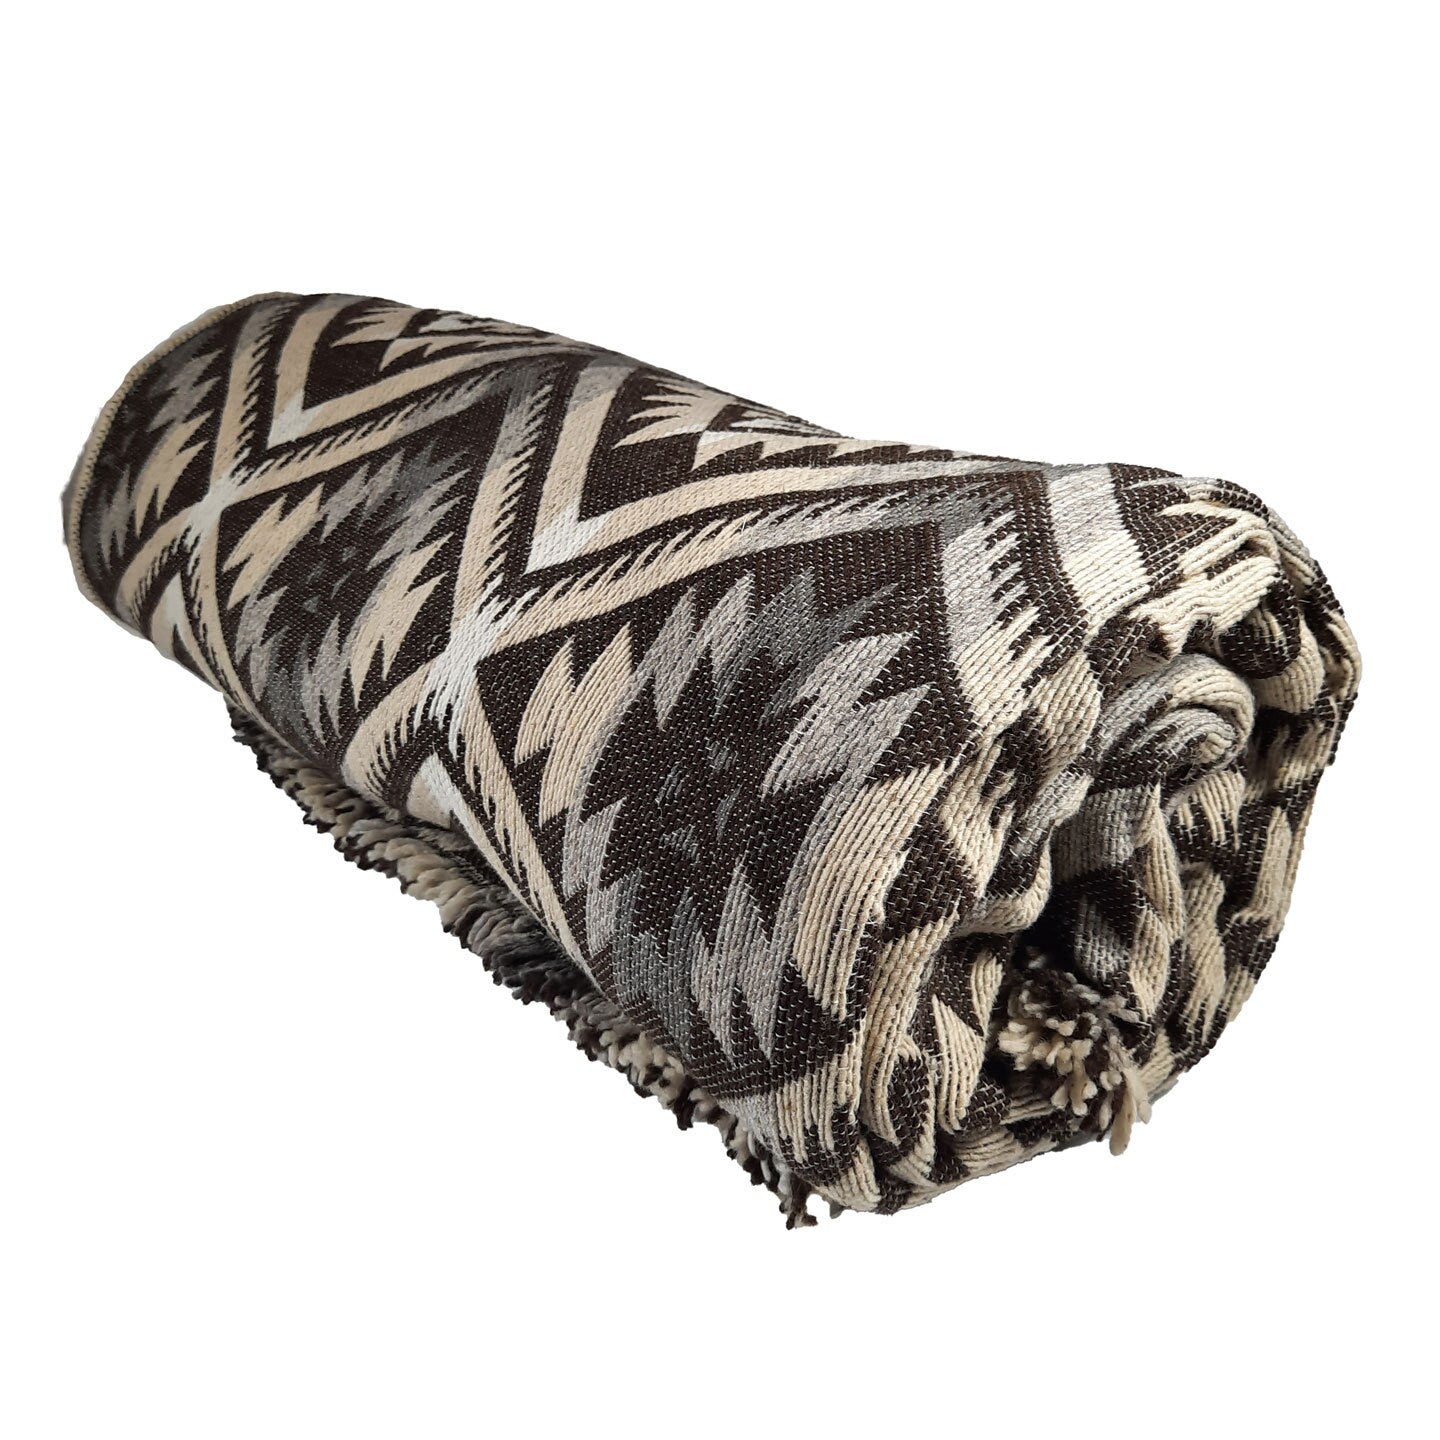  Warm Queen Size Blanket | Beige Brown Gray